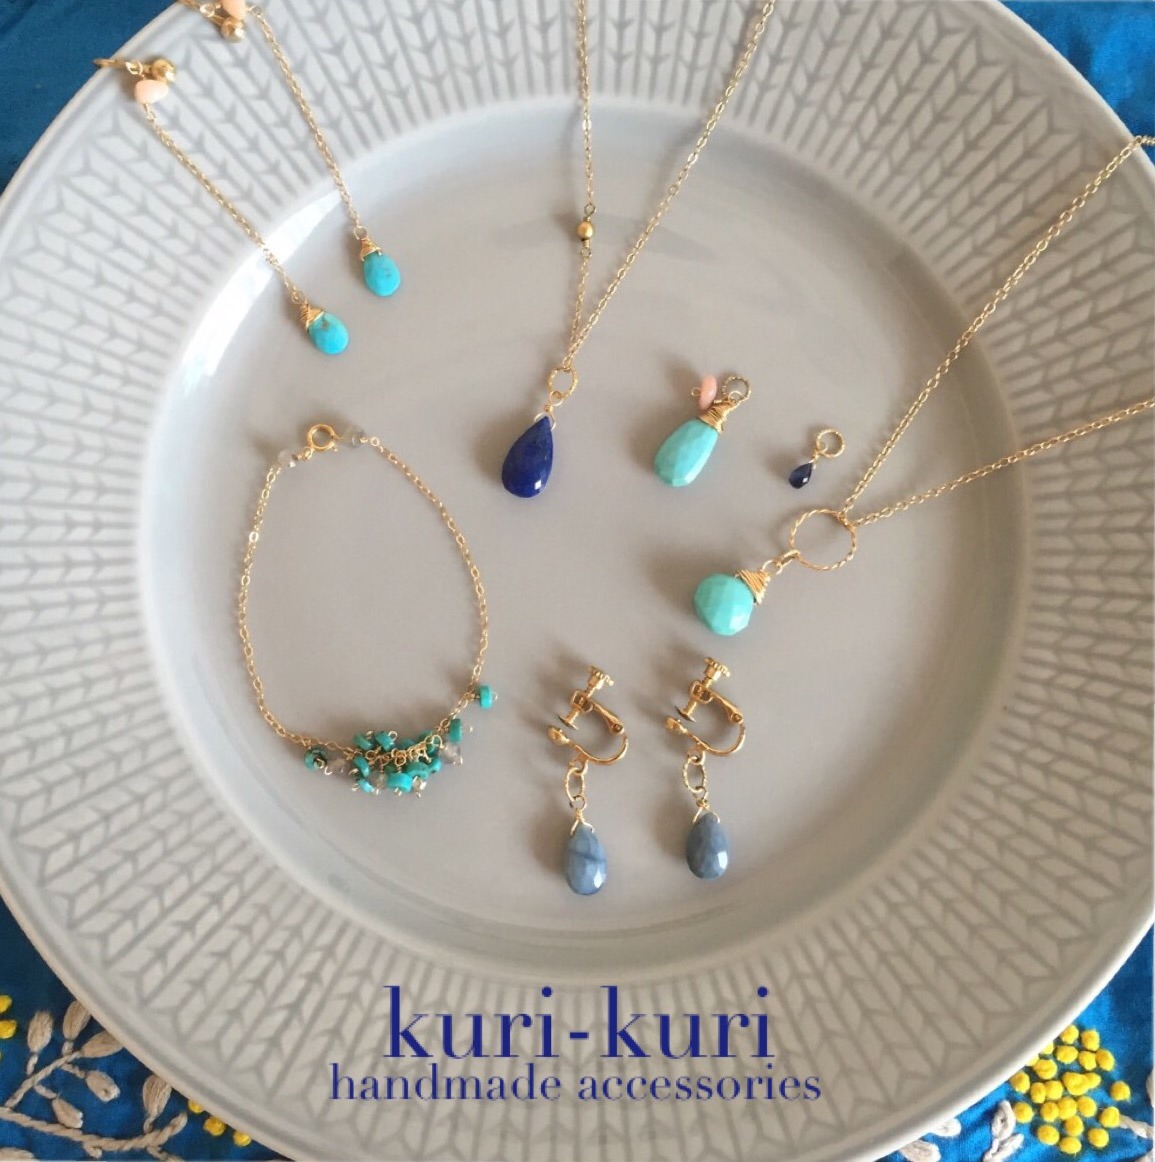 kuri-kuri handmade accessories